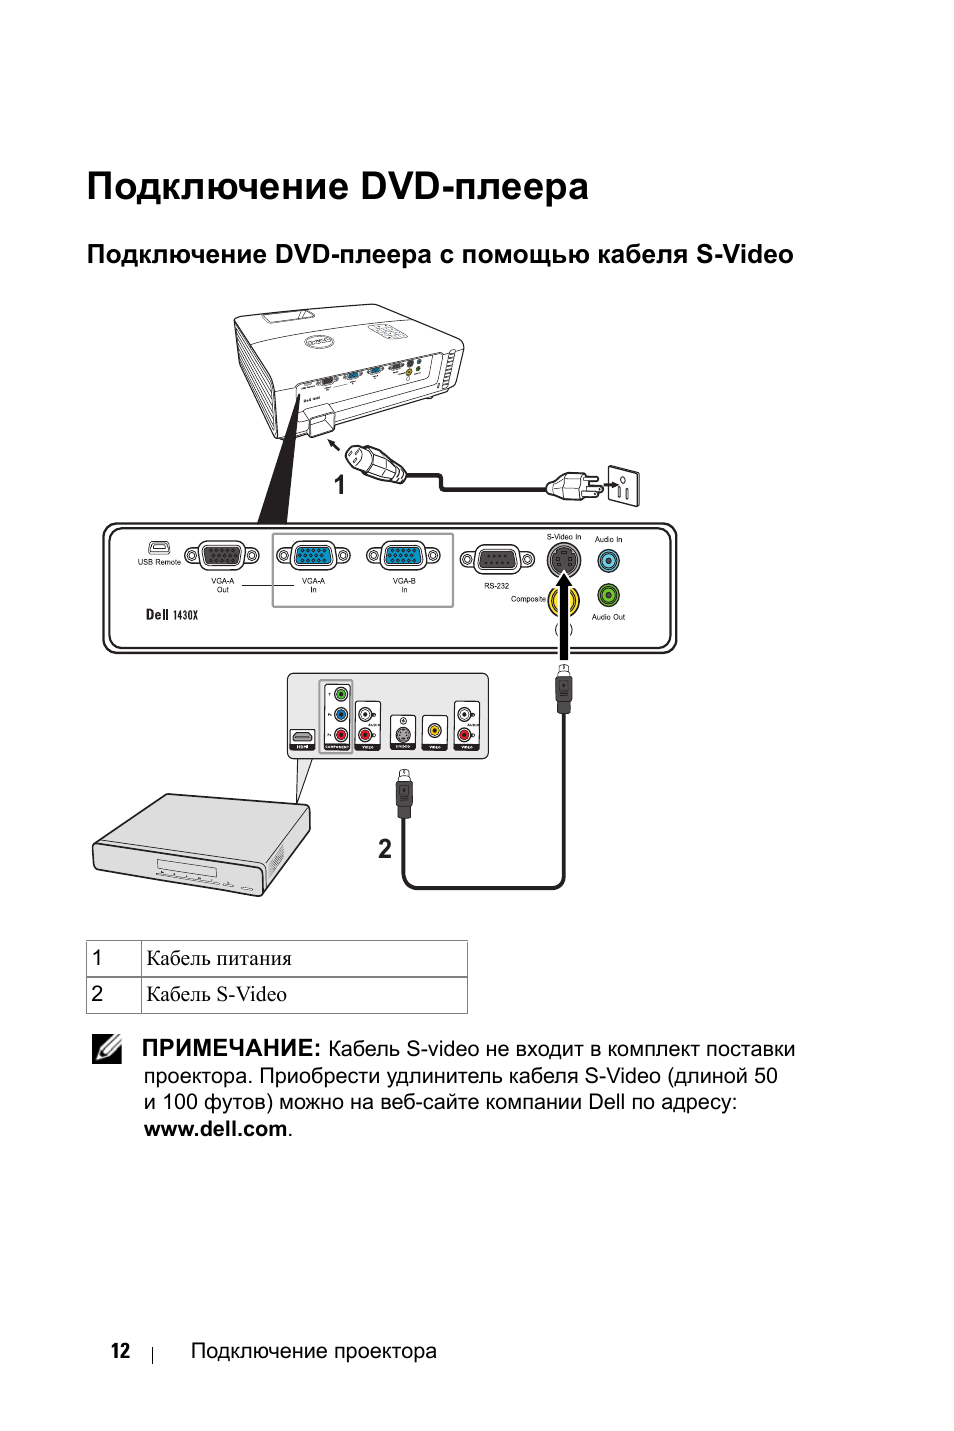 Как подключить видеомагнитофон к телевизору за 5 минут